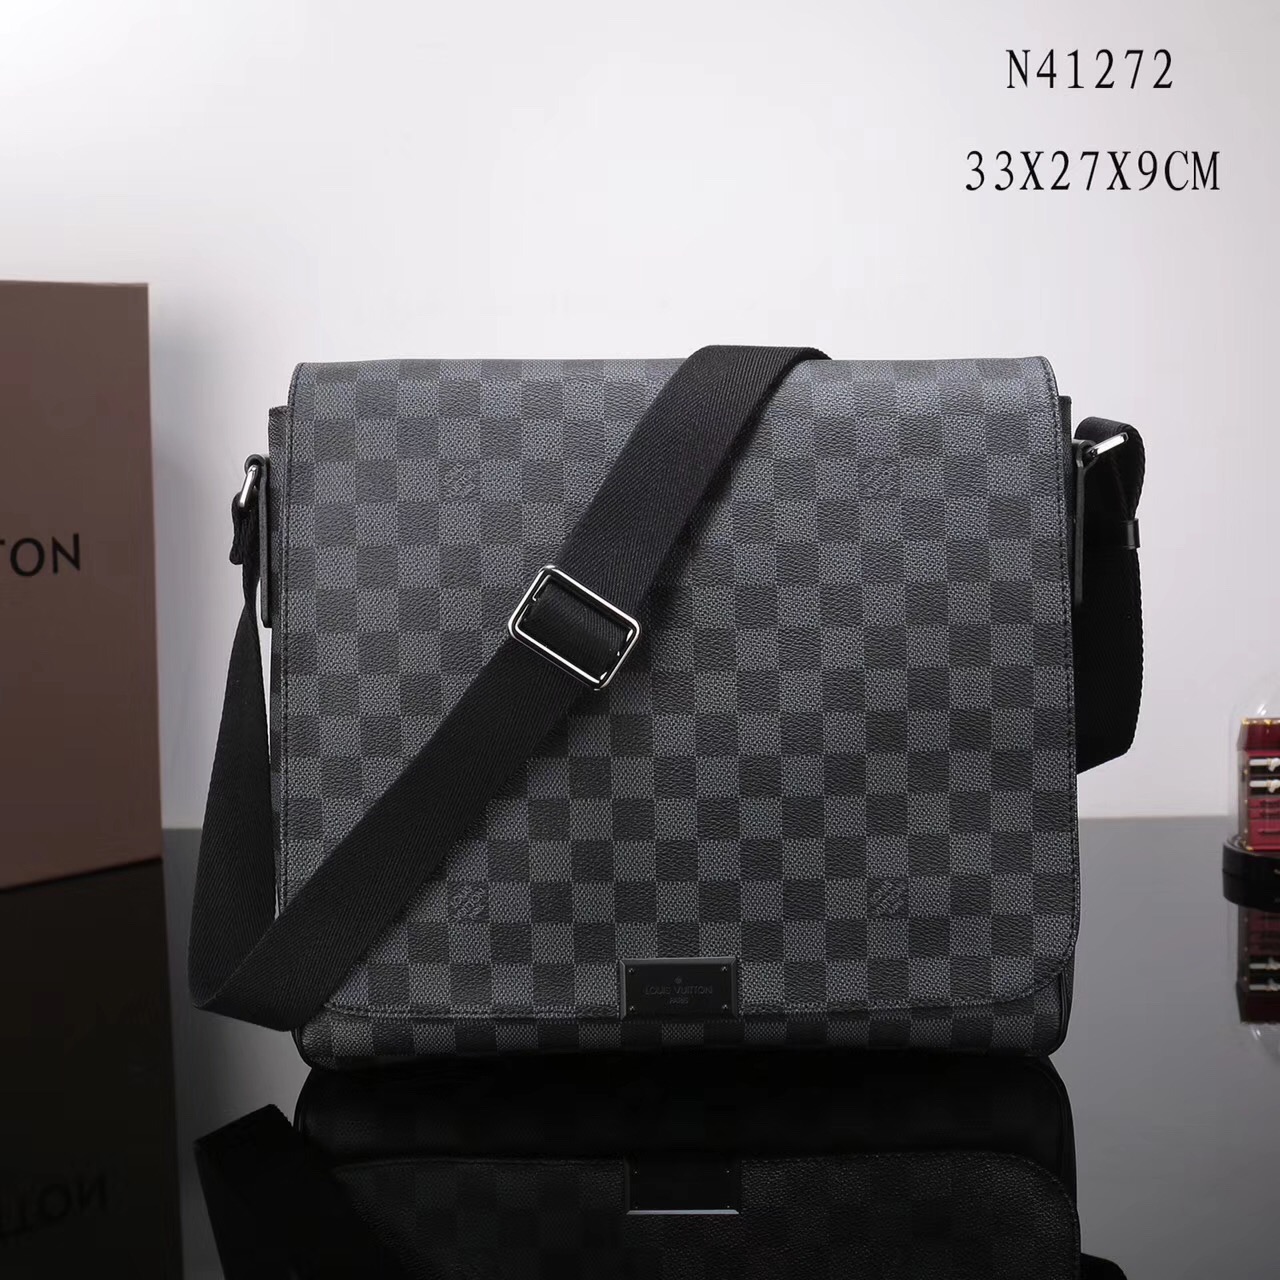 LV Louis Vuitton M41272 Damier District Handbags Graphite bags